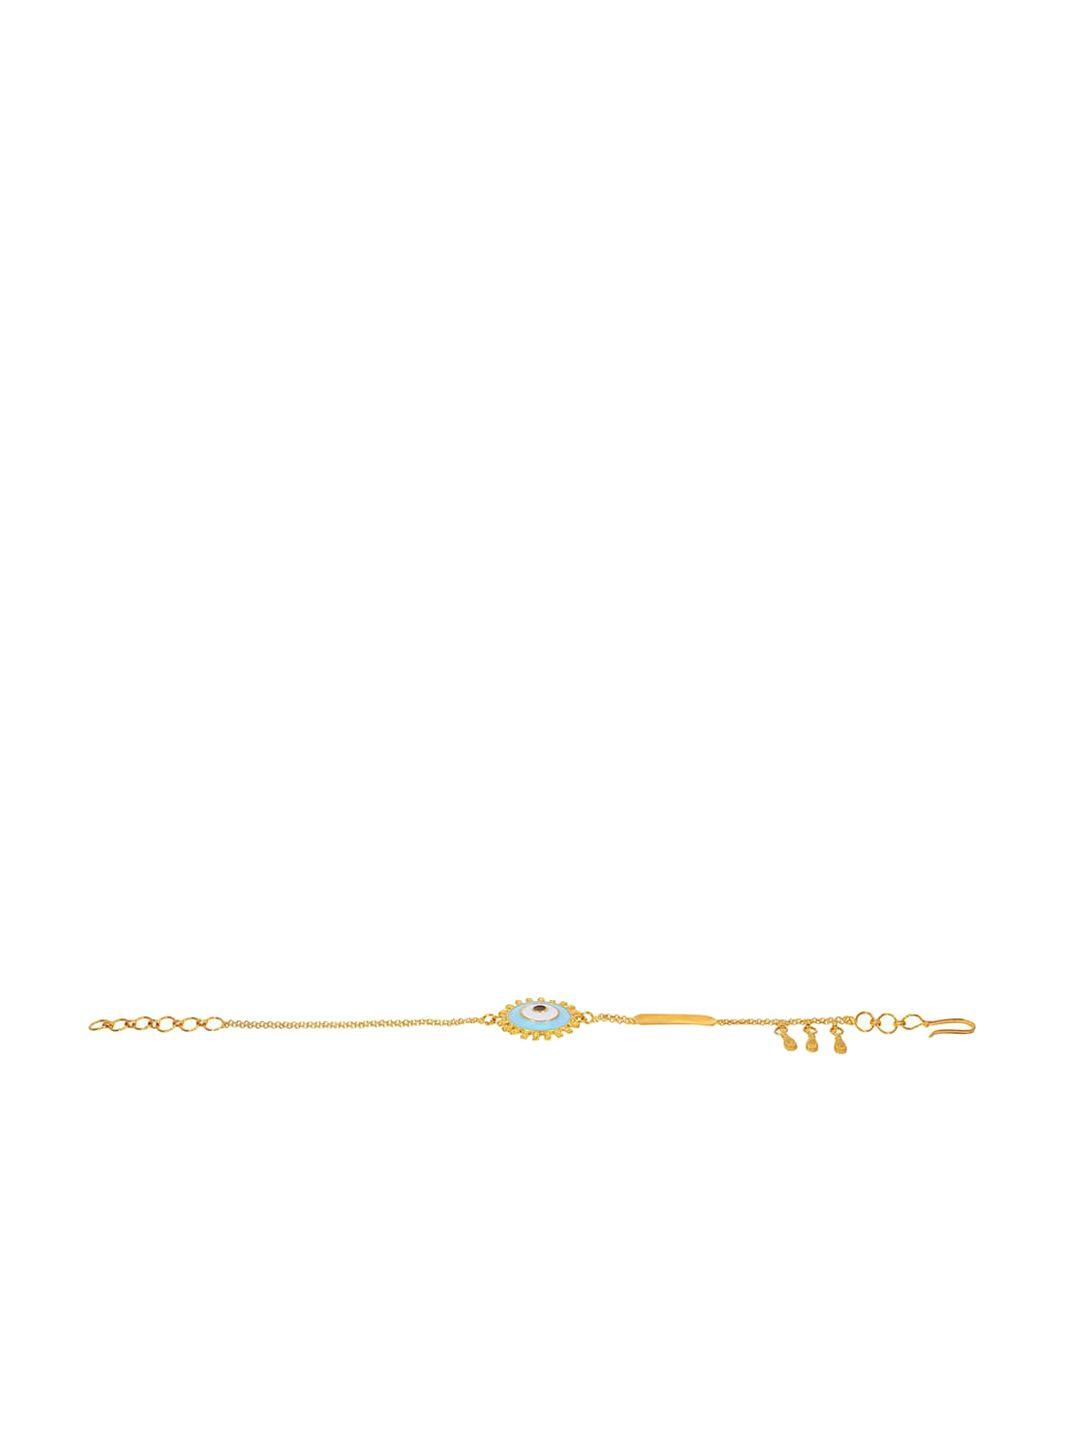 senco-guardian-vision-22kt-gold-bracelet-4.3gm